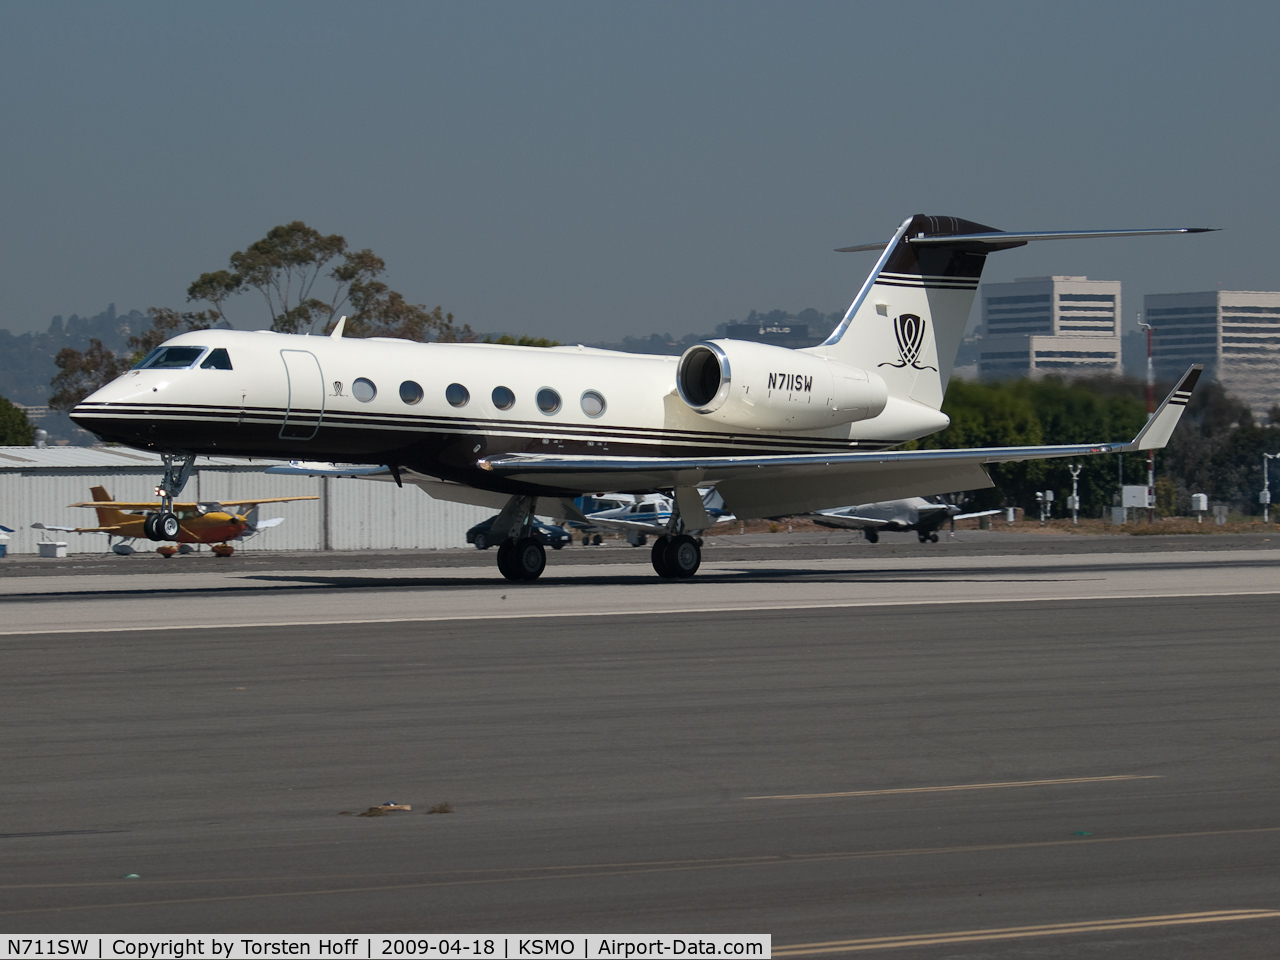 N711SW, 2007 Gulfstream Aerospace GIV-X (G450) C/N 4085, N711SW arriving on RWY 21